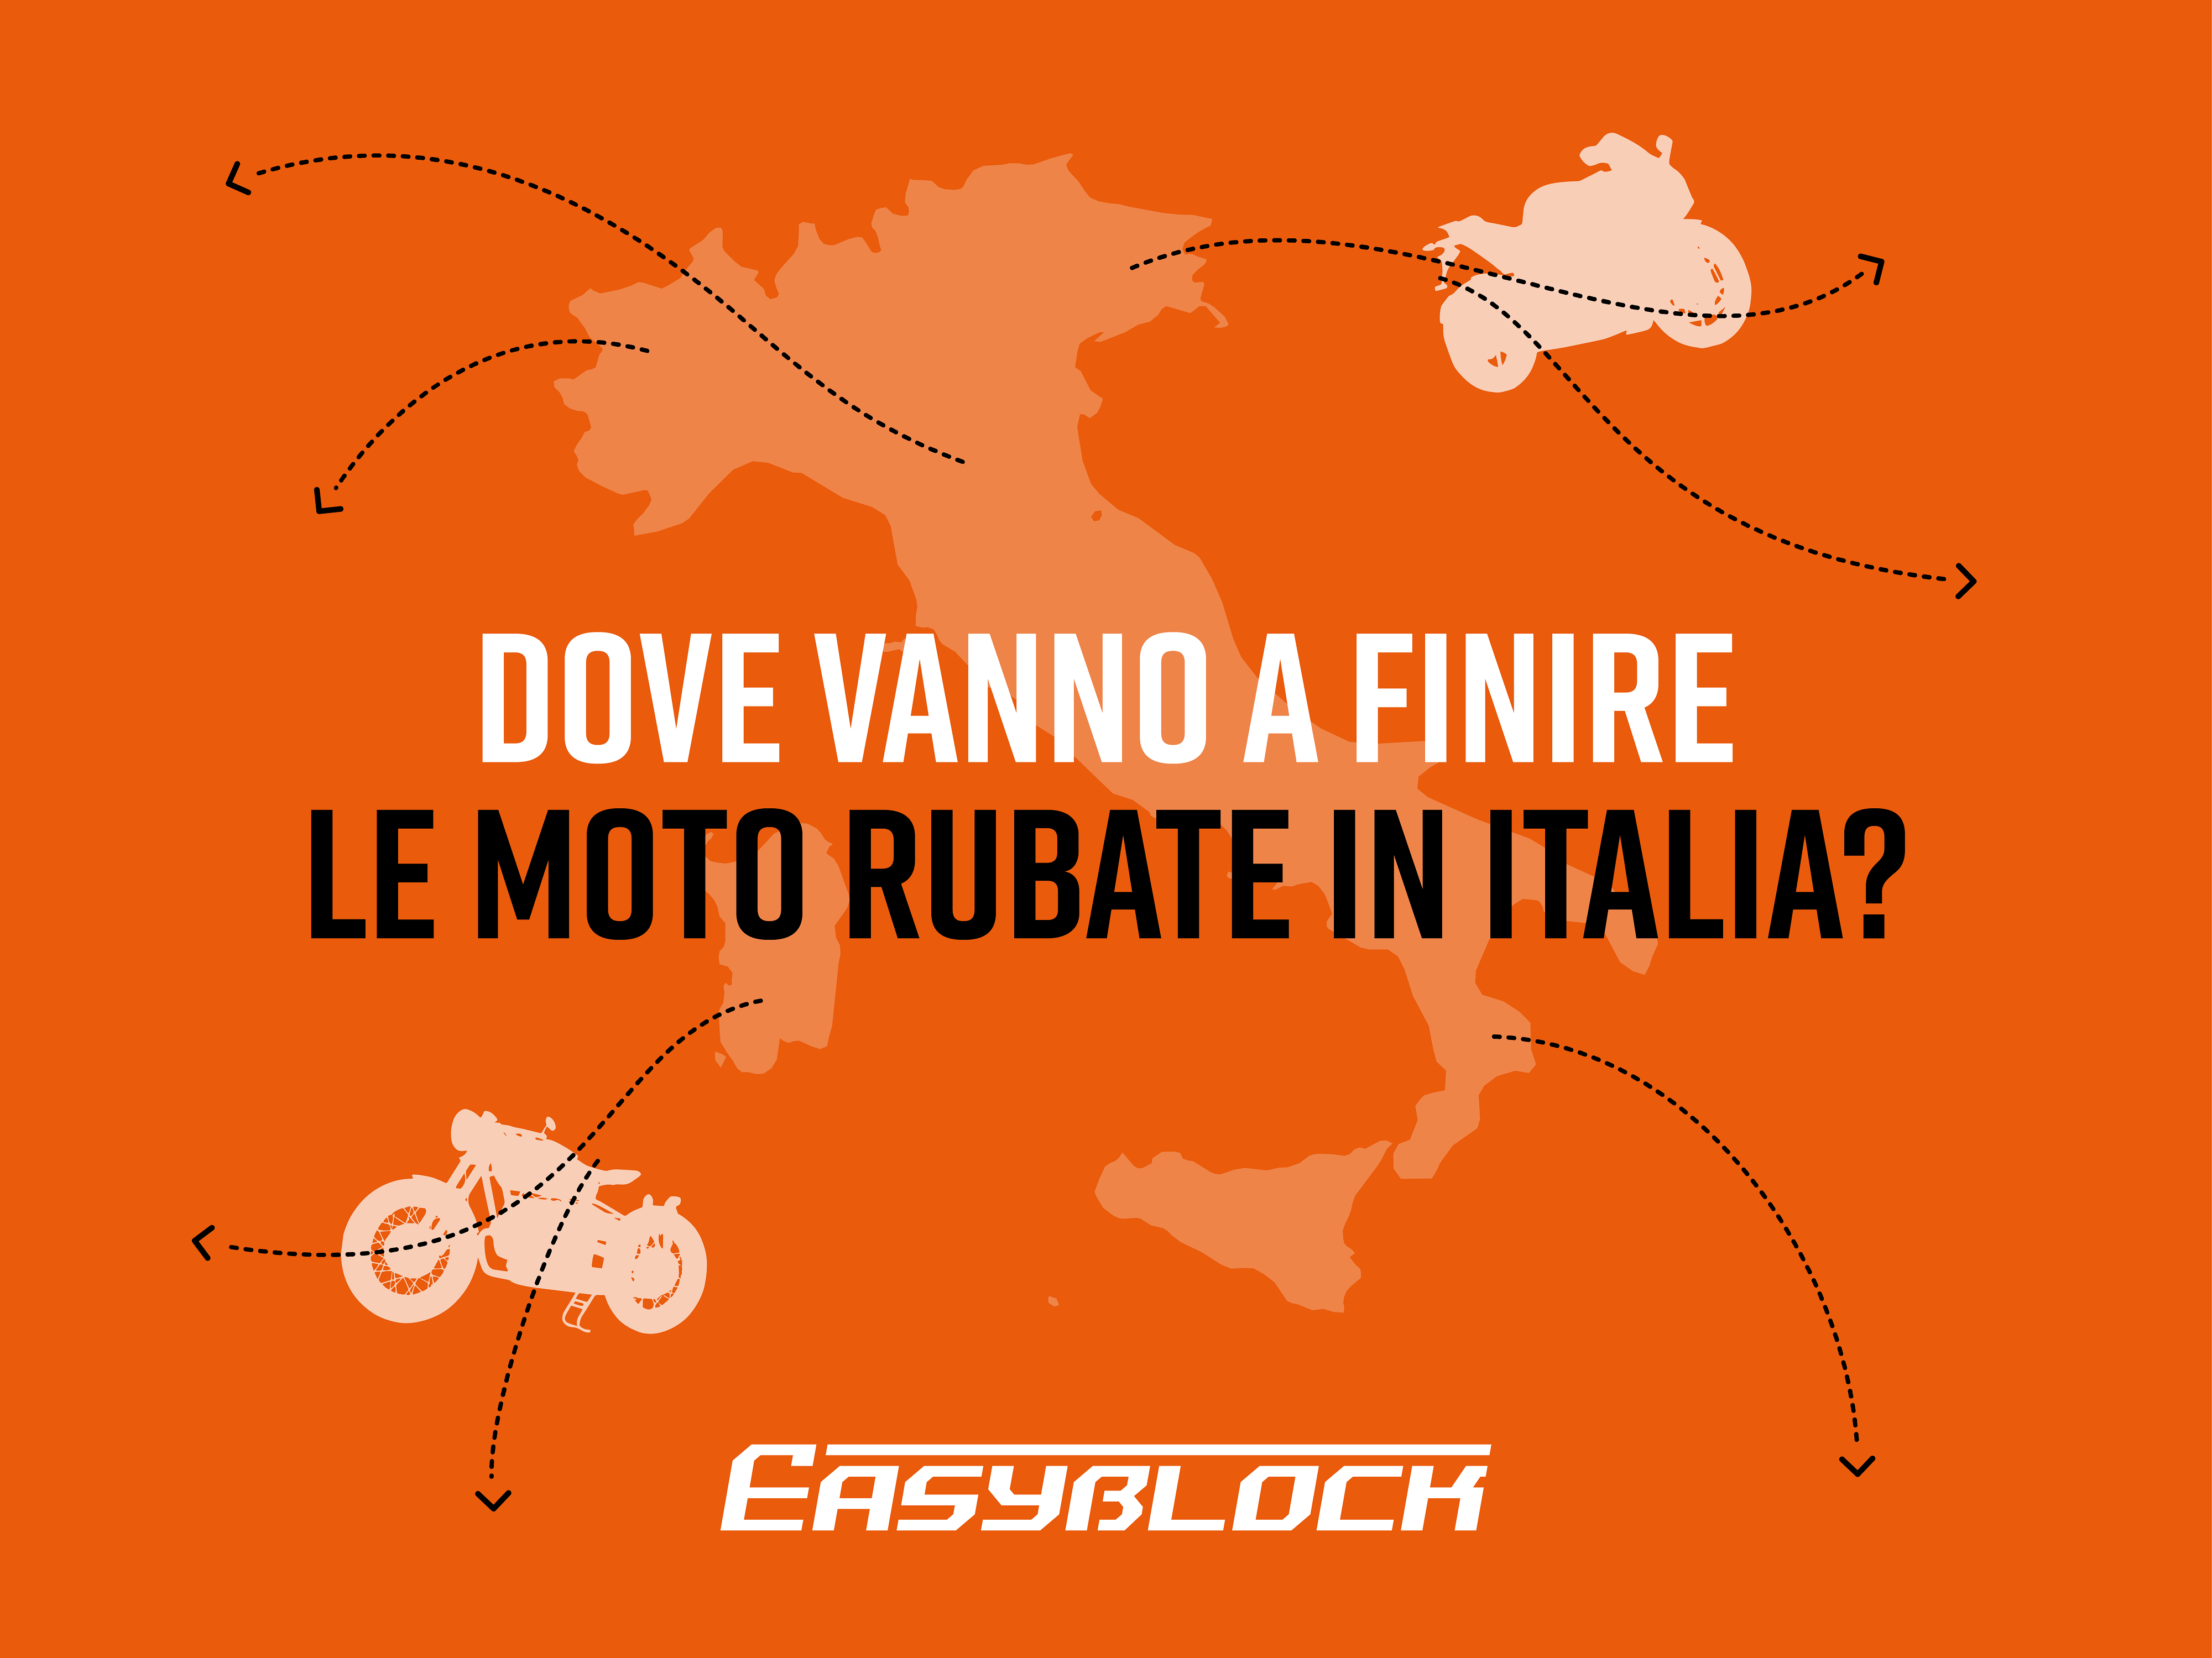 DOVE VANNO A FINIRE LE MOTO RUBATE IN ITALIA?